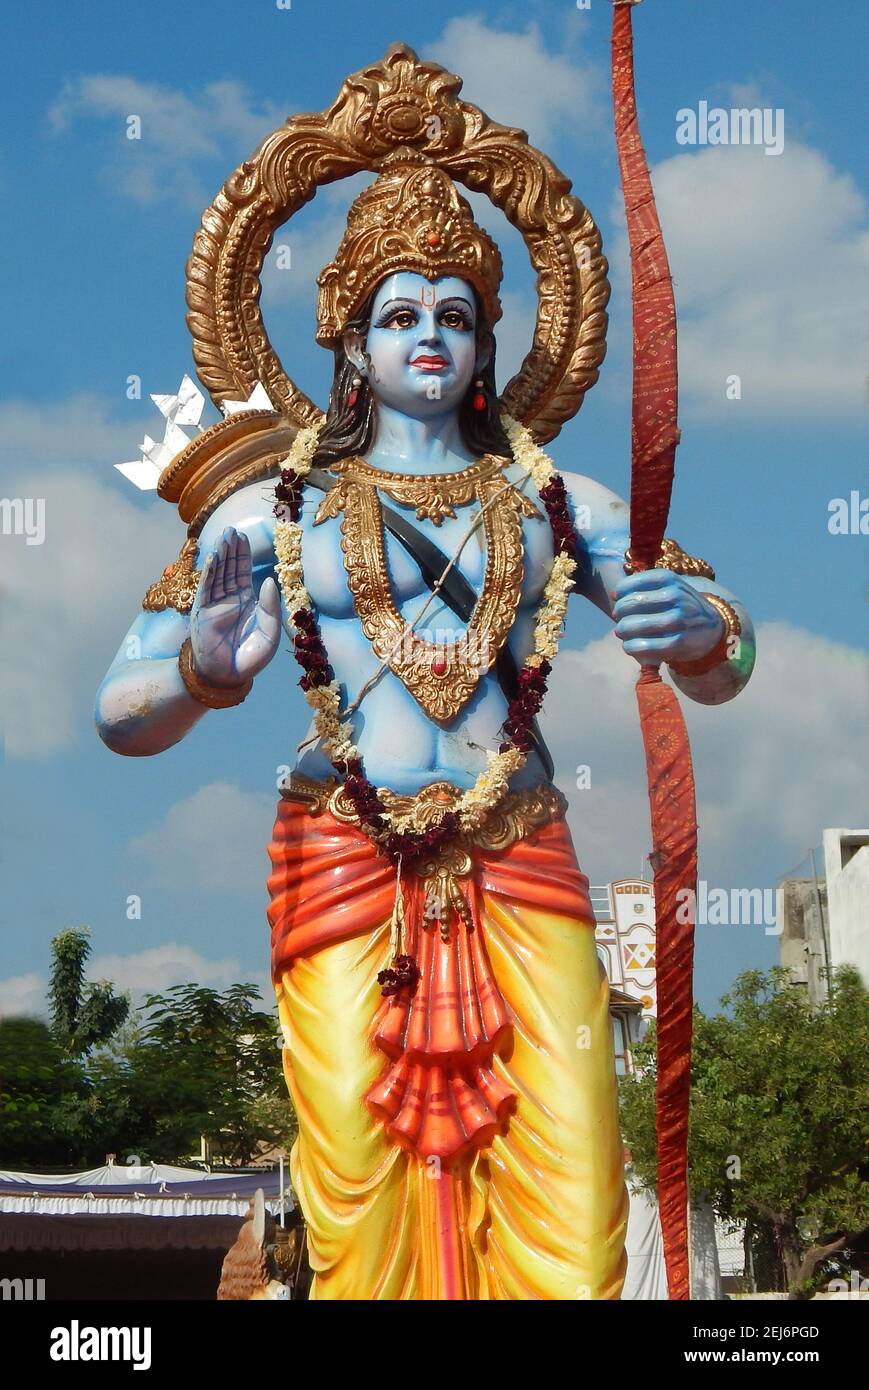 Vue du Dieu hindou indien Rama avec son arc d'arme et flèches dans un temple Banque D'Images